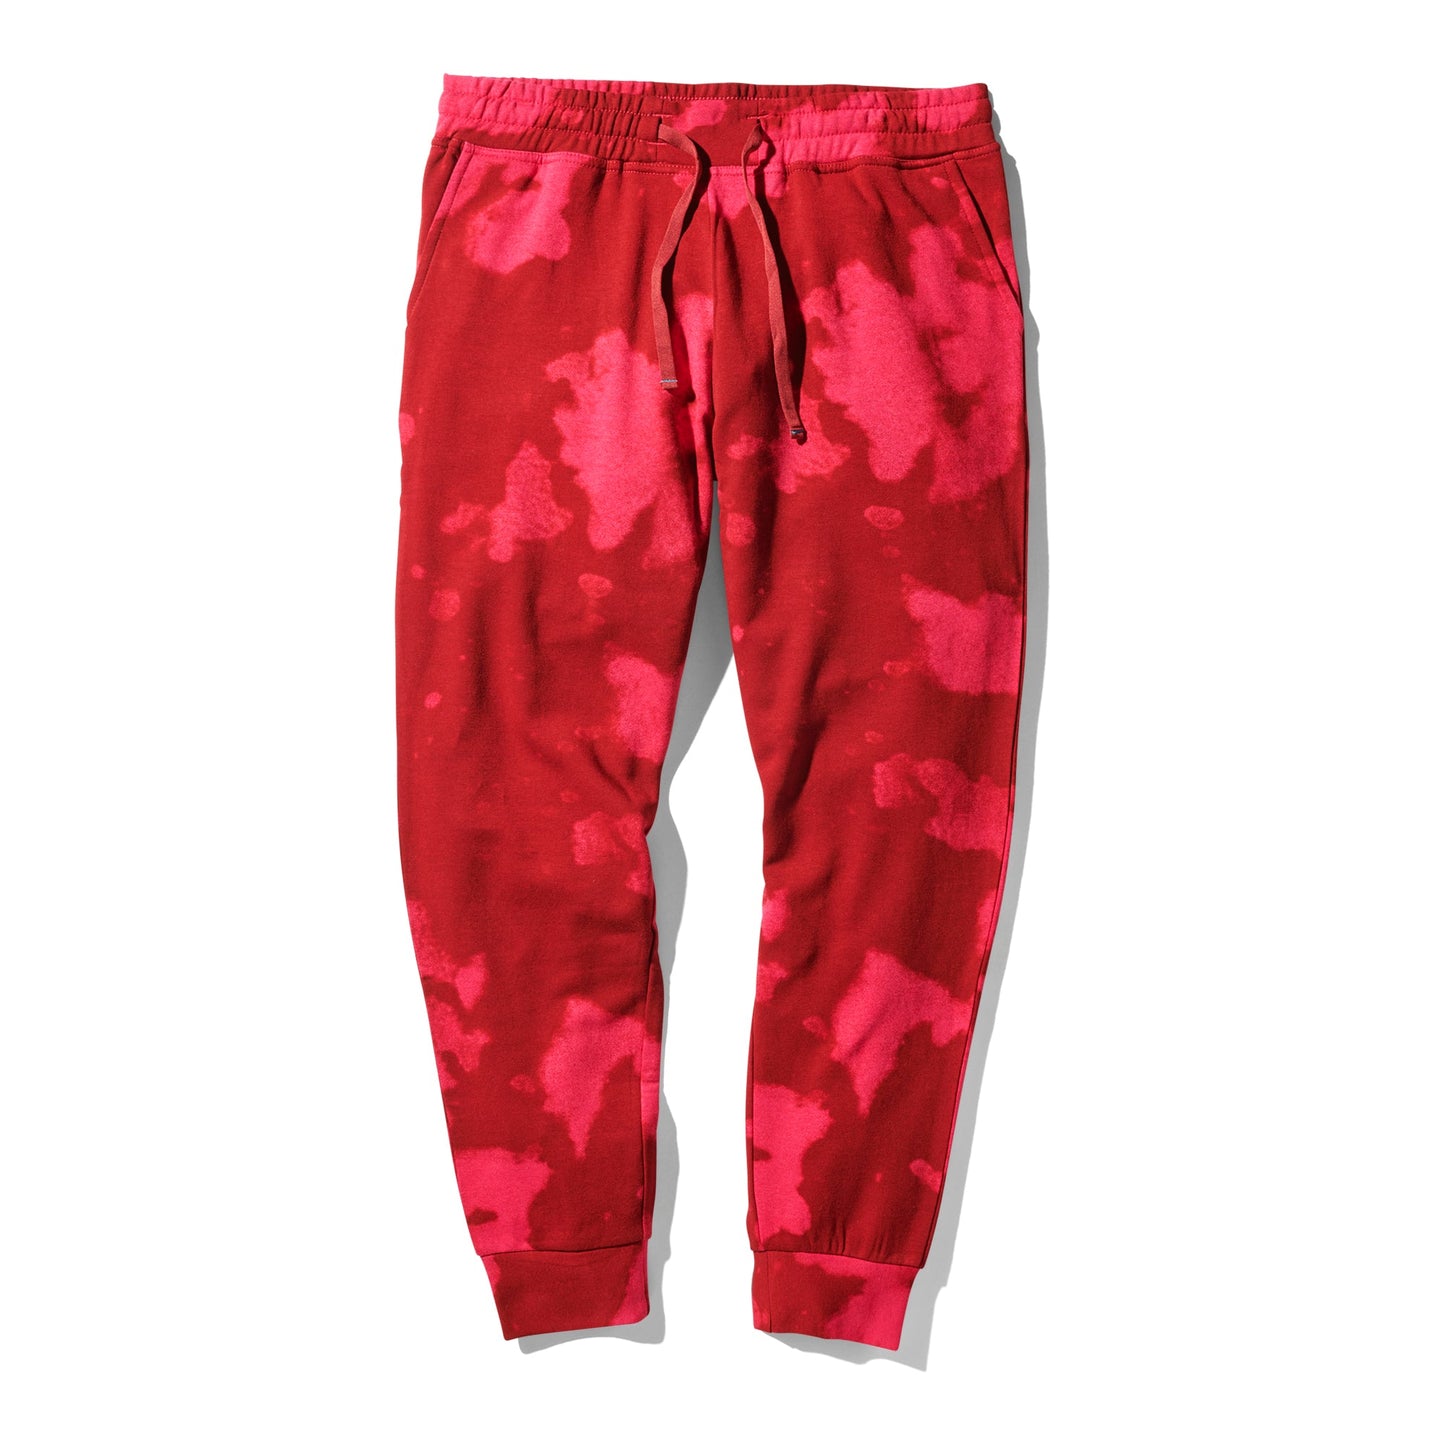 Pantalon de jogging pour femme rouge Shelter de Stance